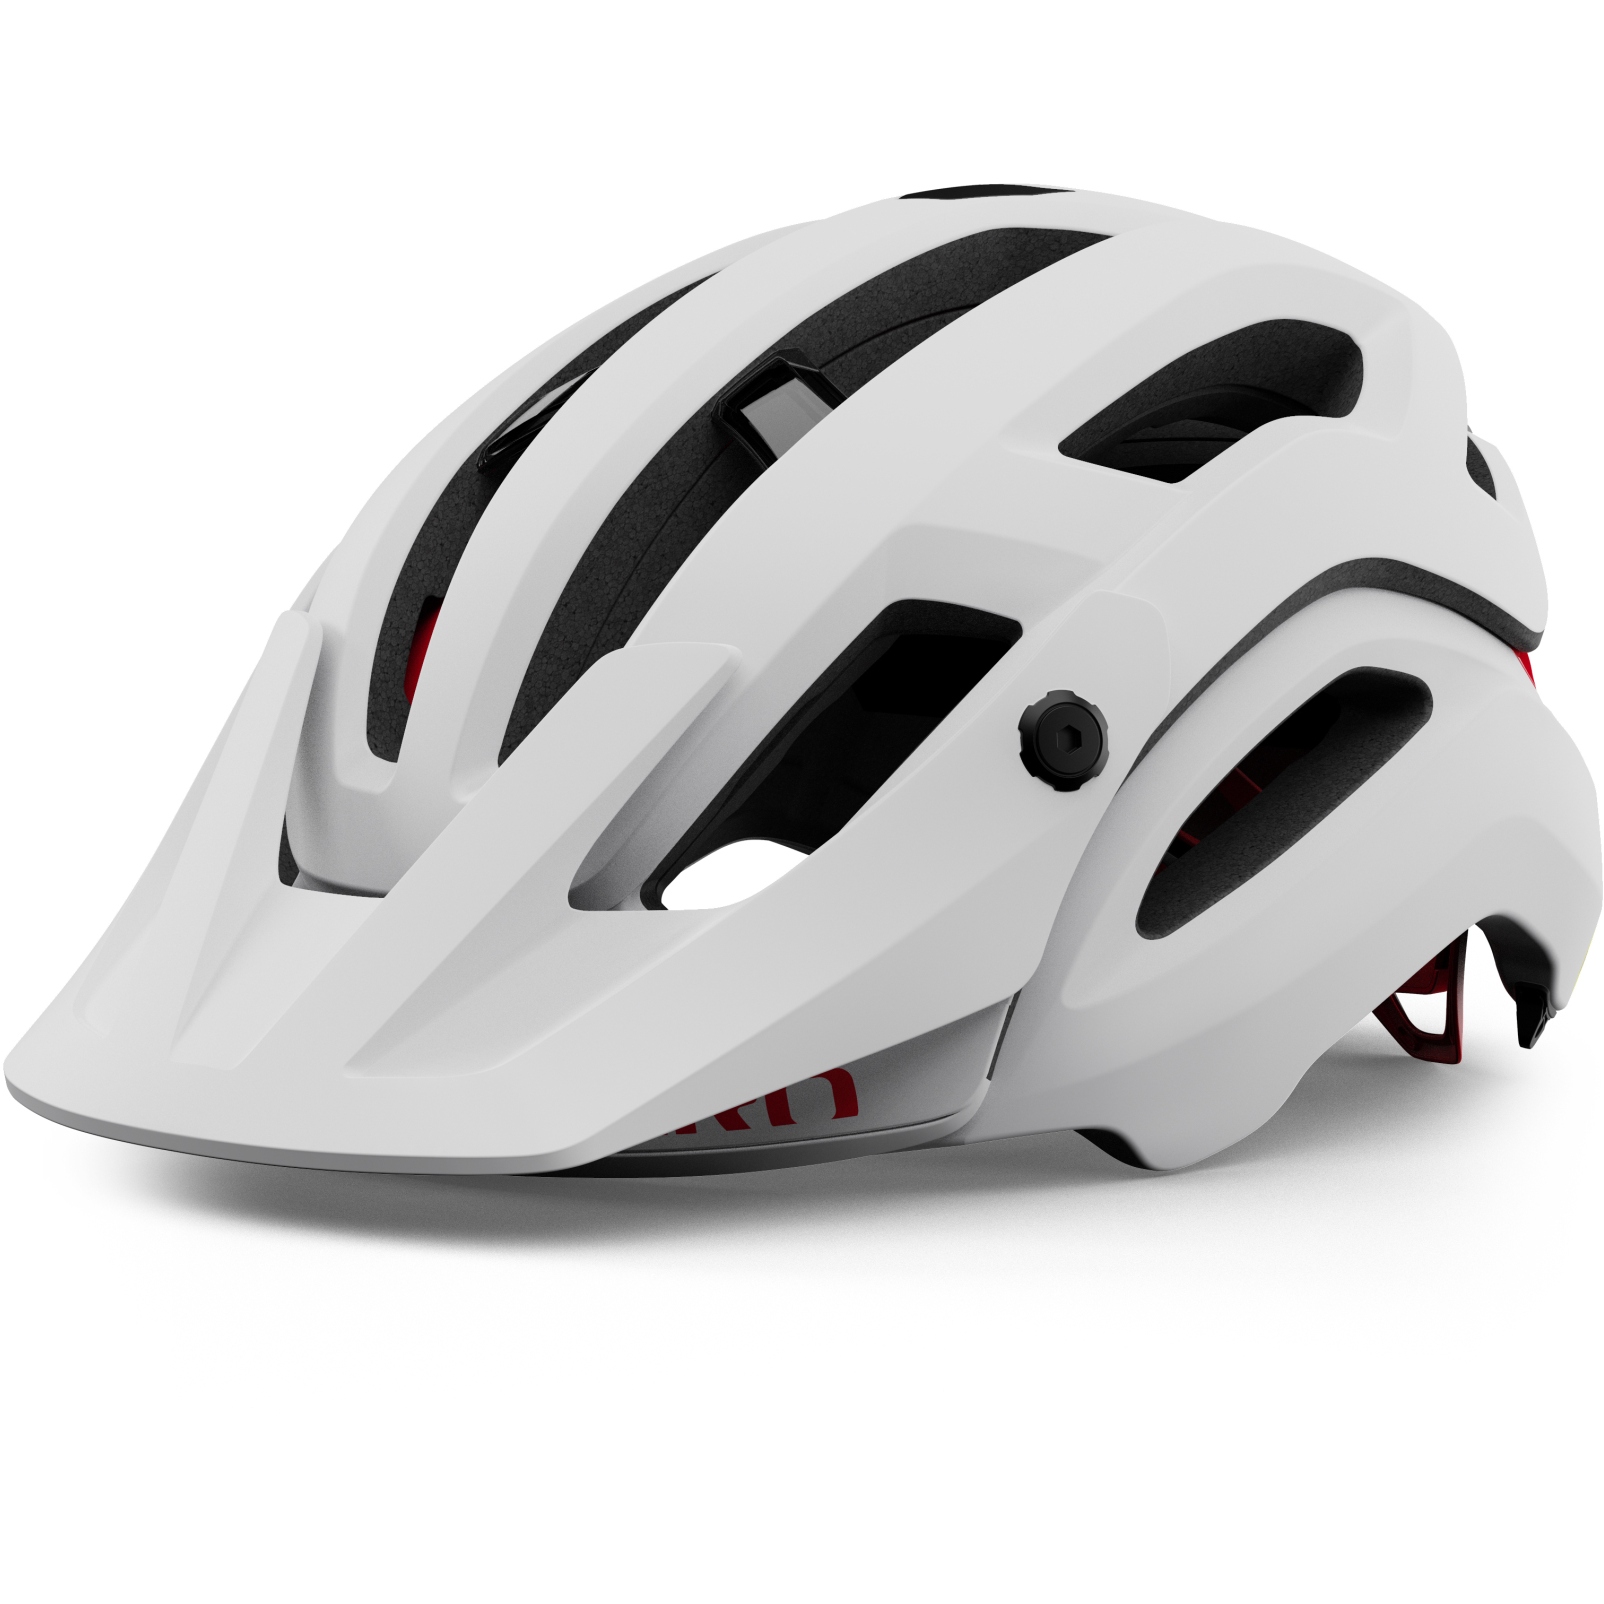 Produktbild von Giro Manifest Spherical Helm - matte white/black